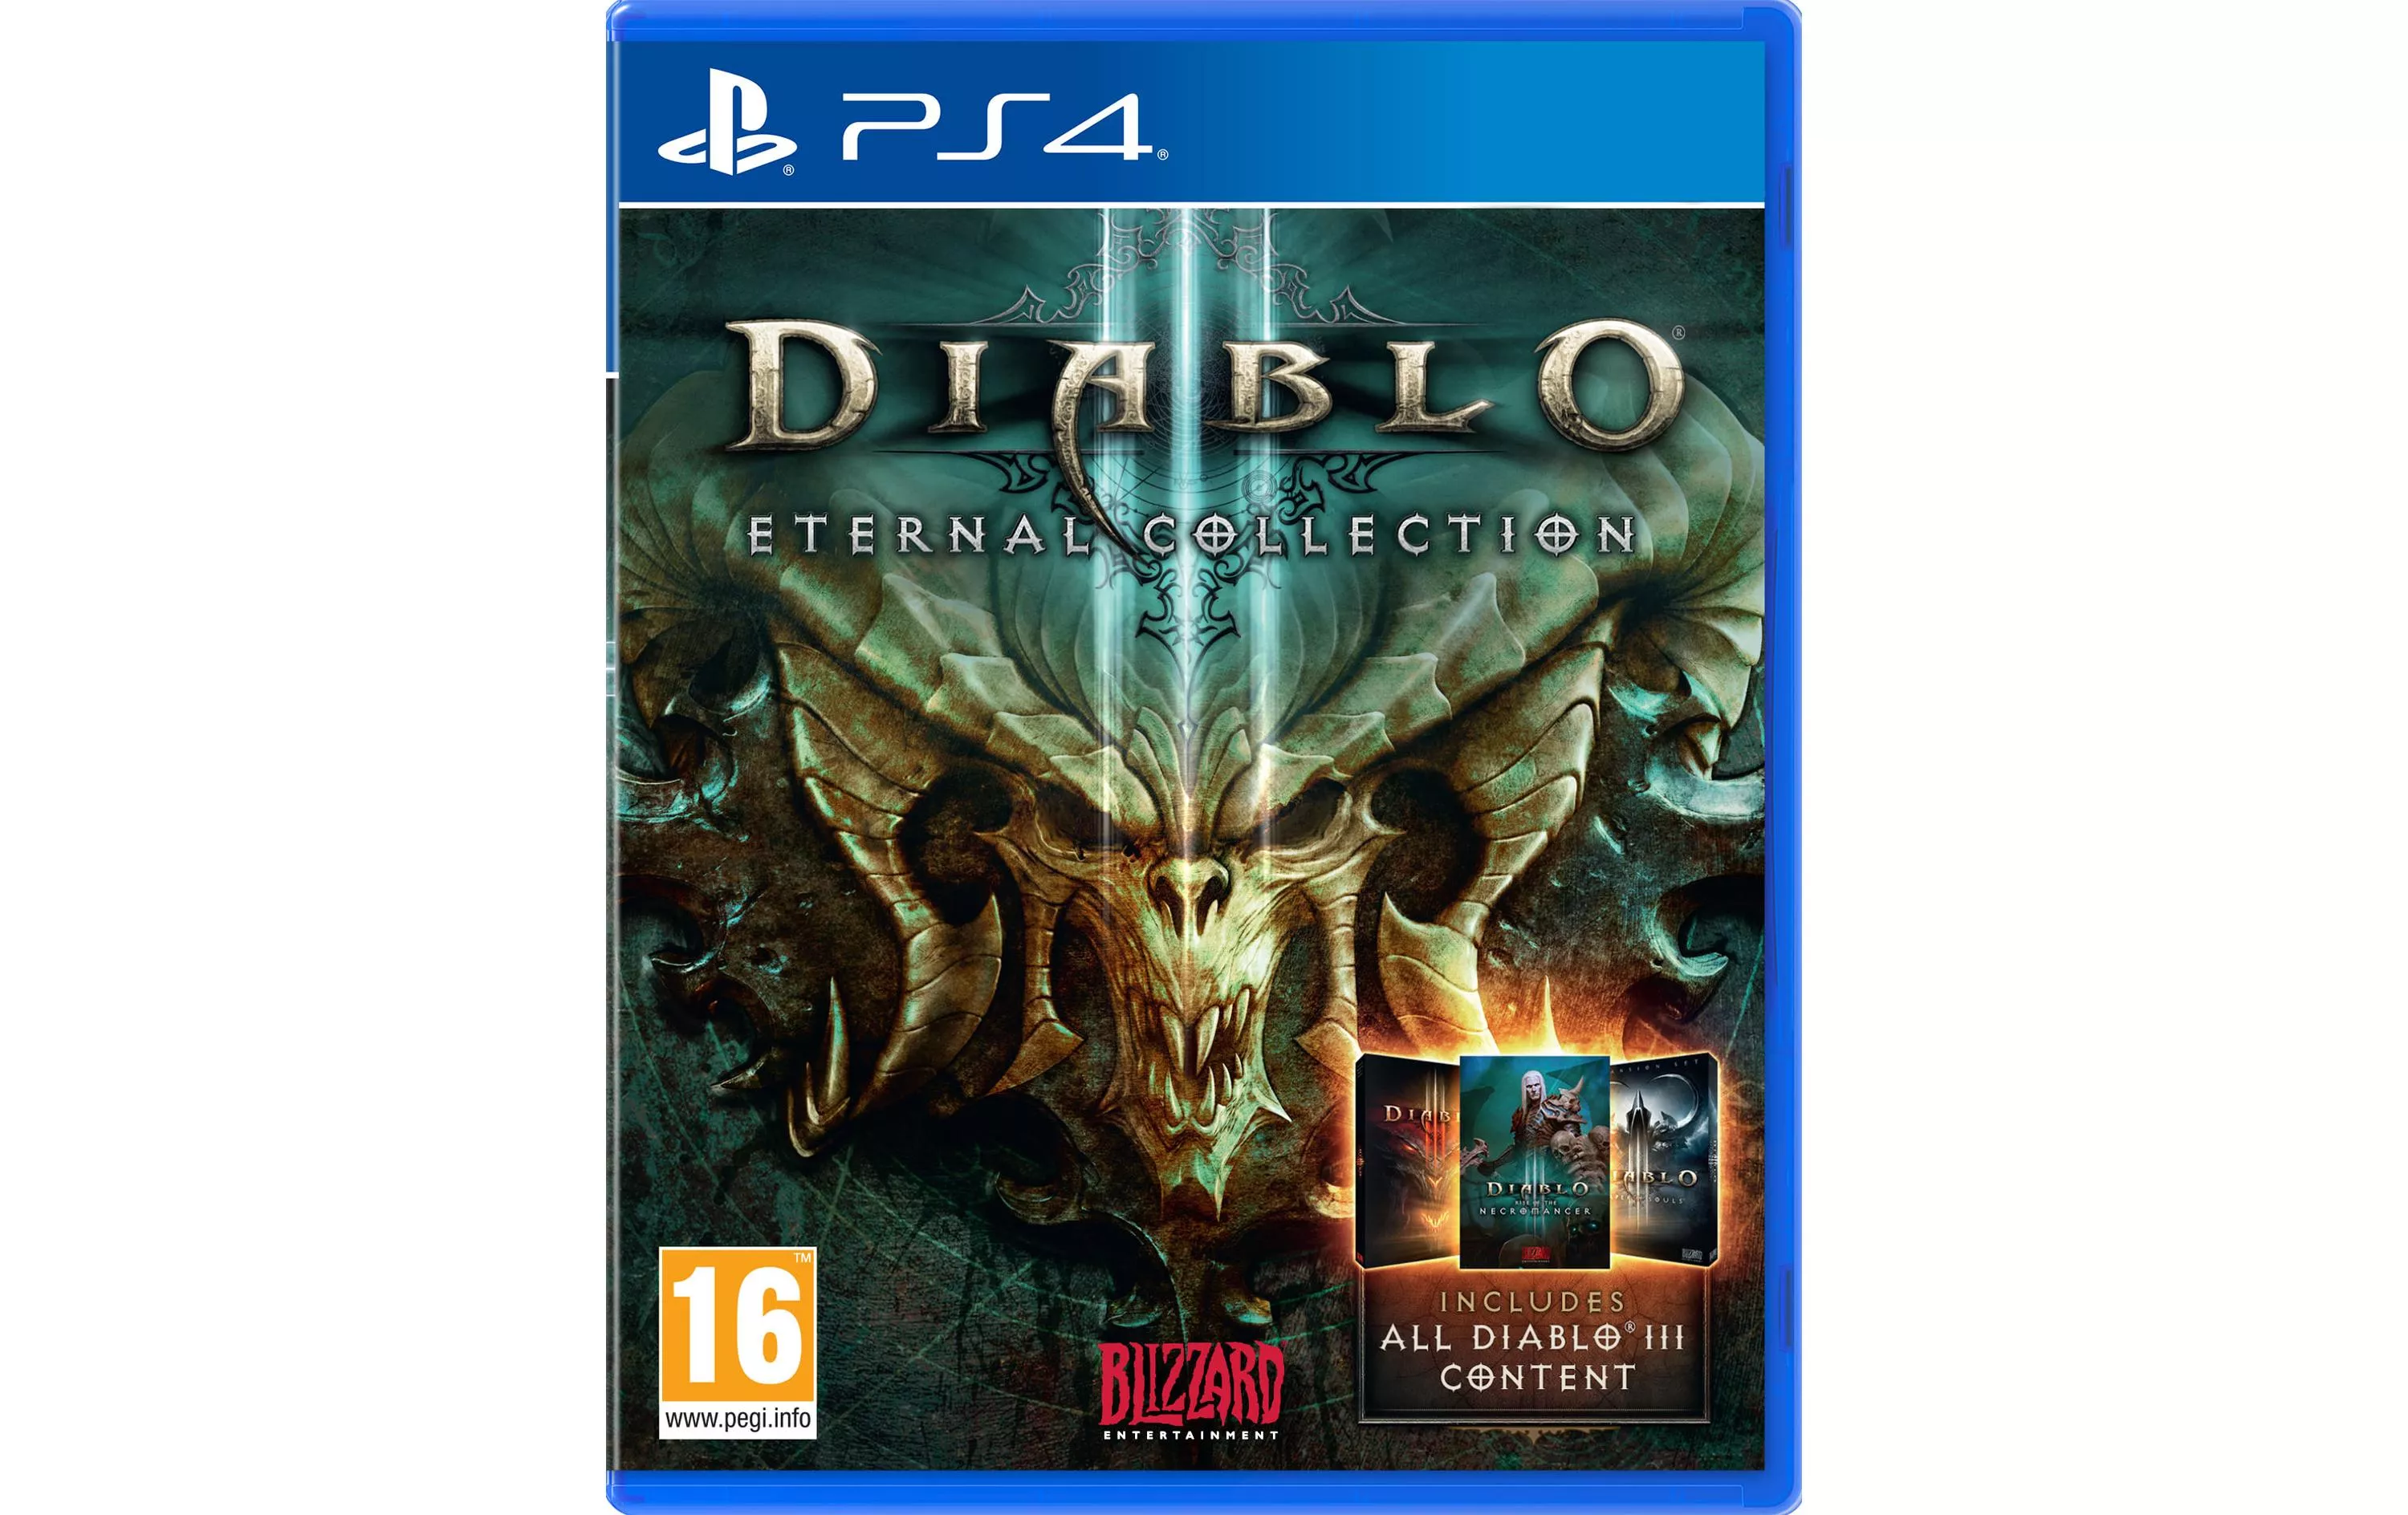 Diablo III Collezione eterna